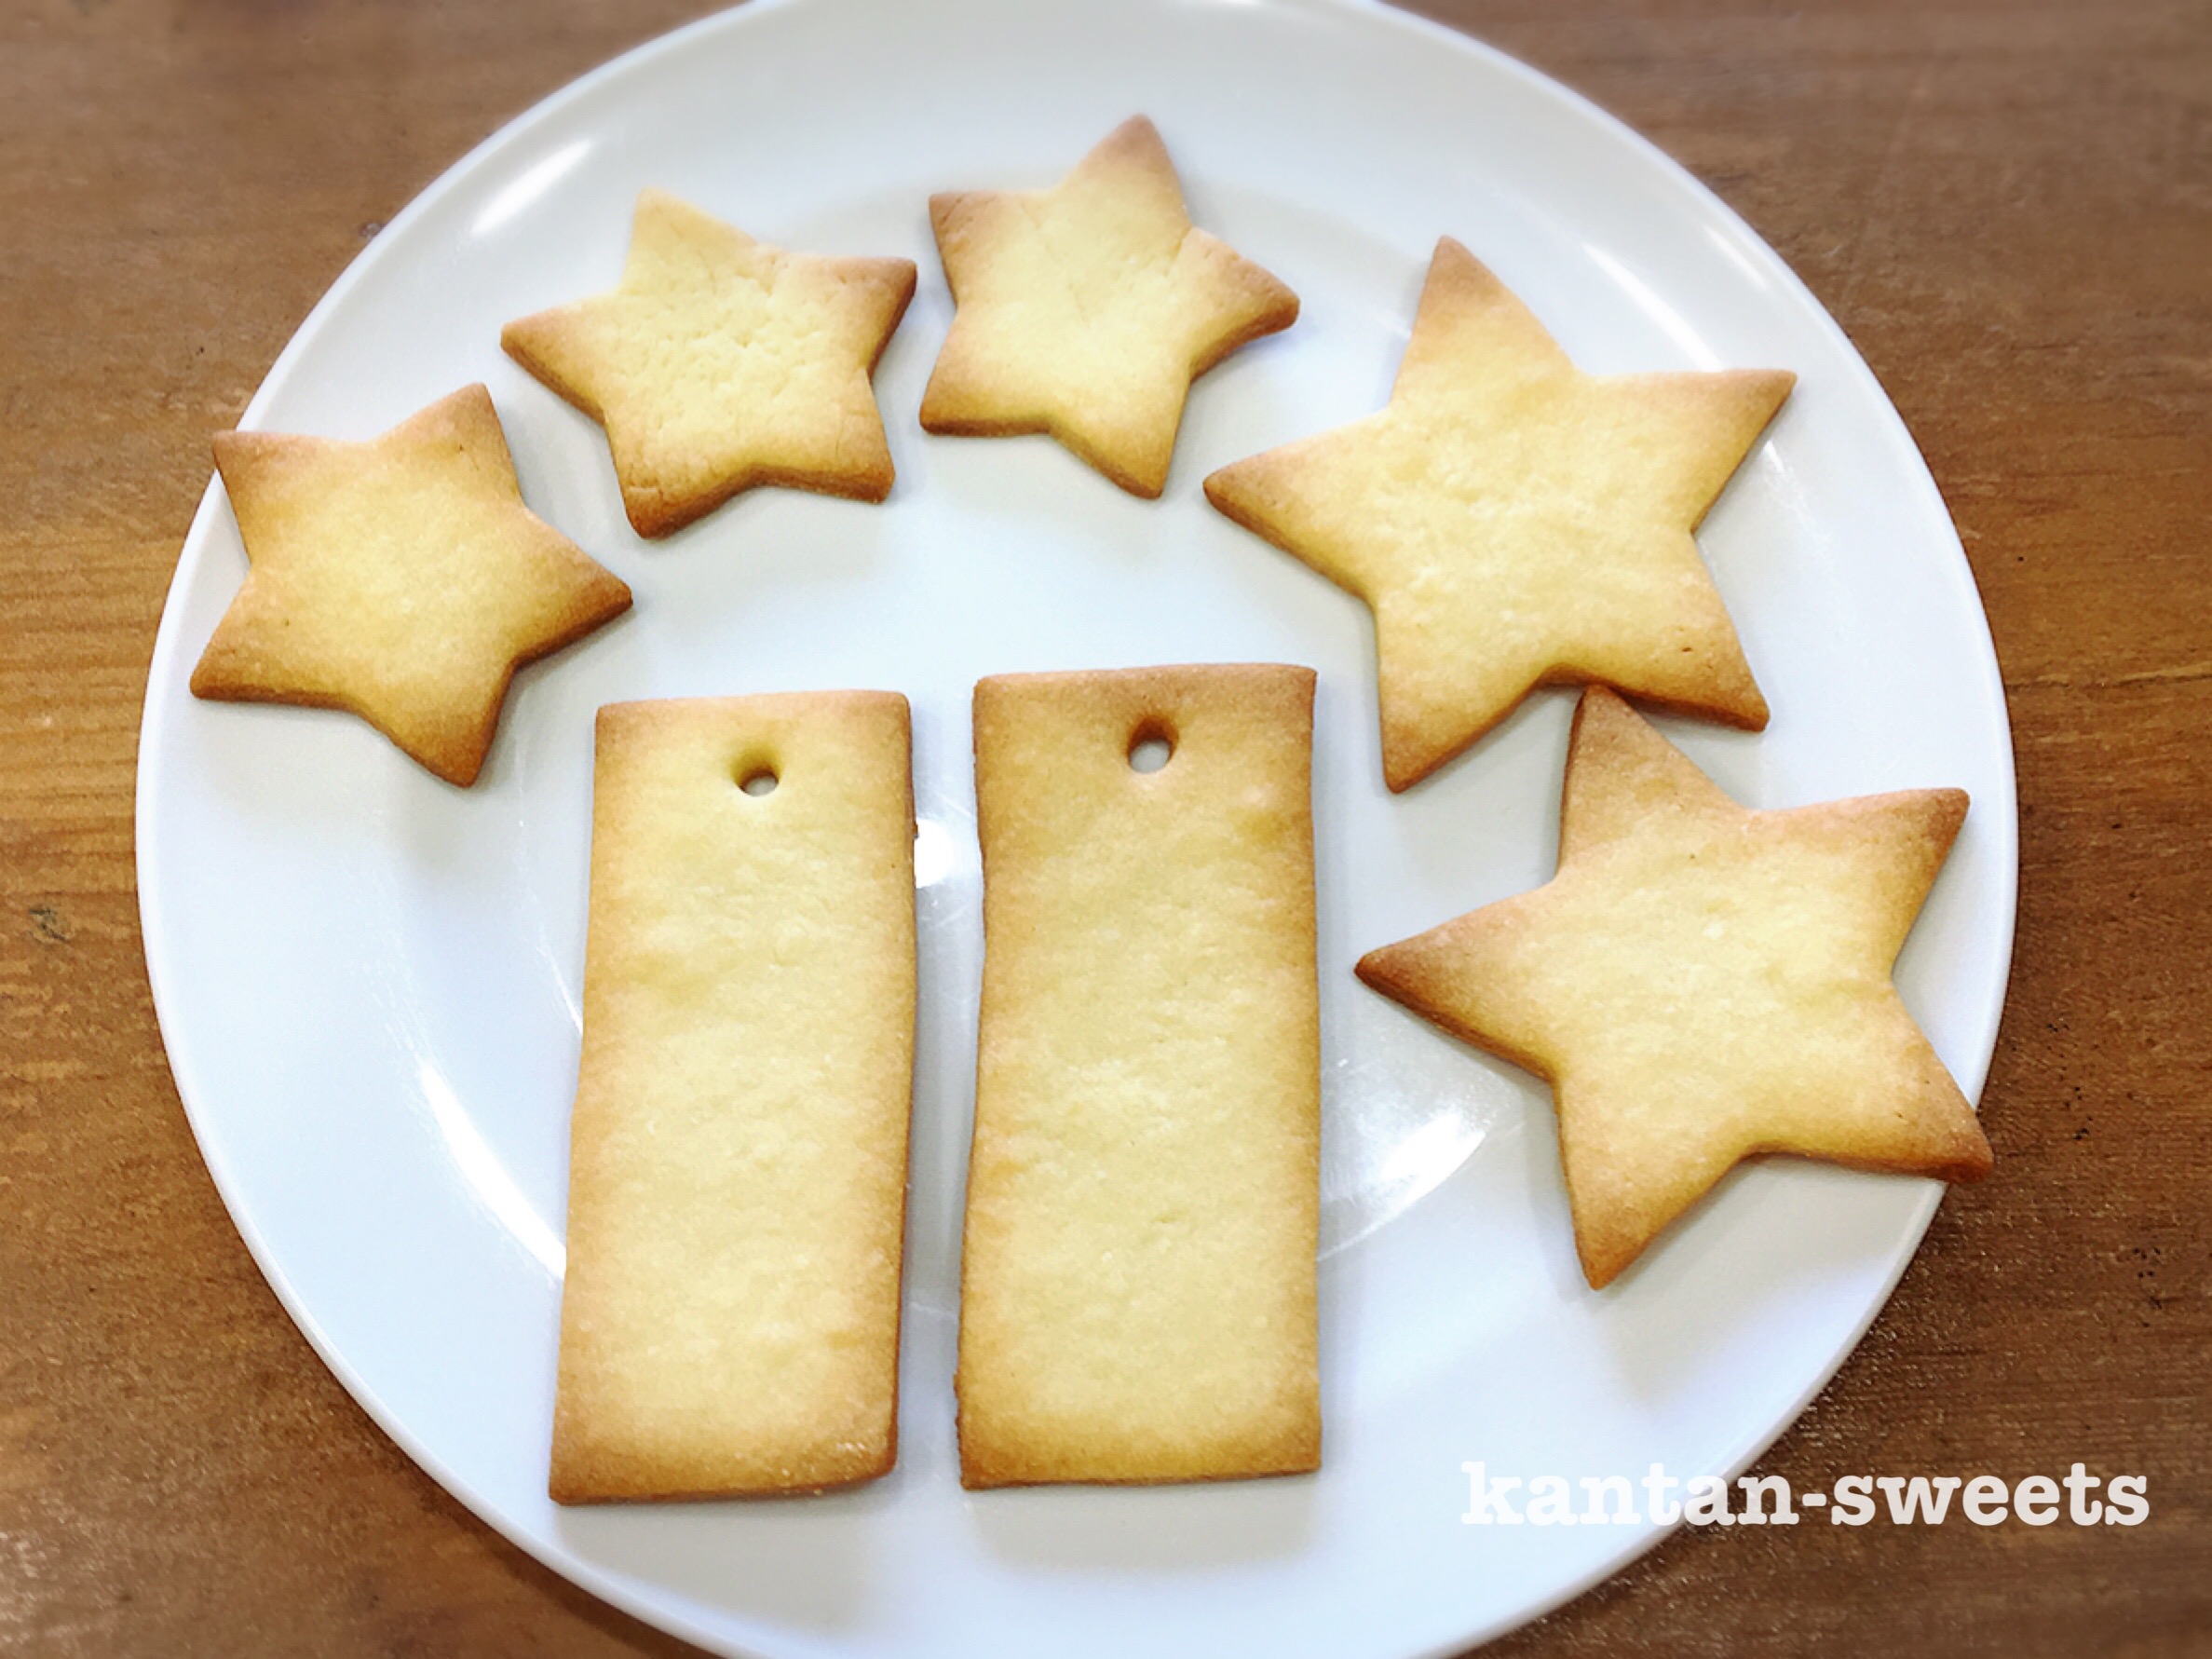 七夕アイシングクッキーに真剣な願い事と星のデザインはラテアート風に